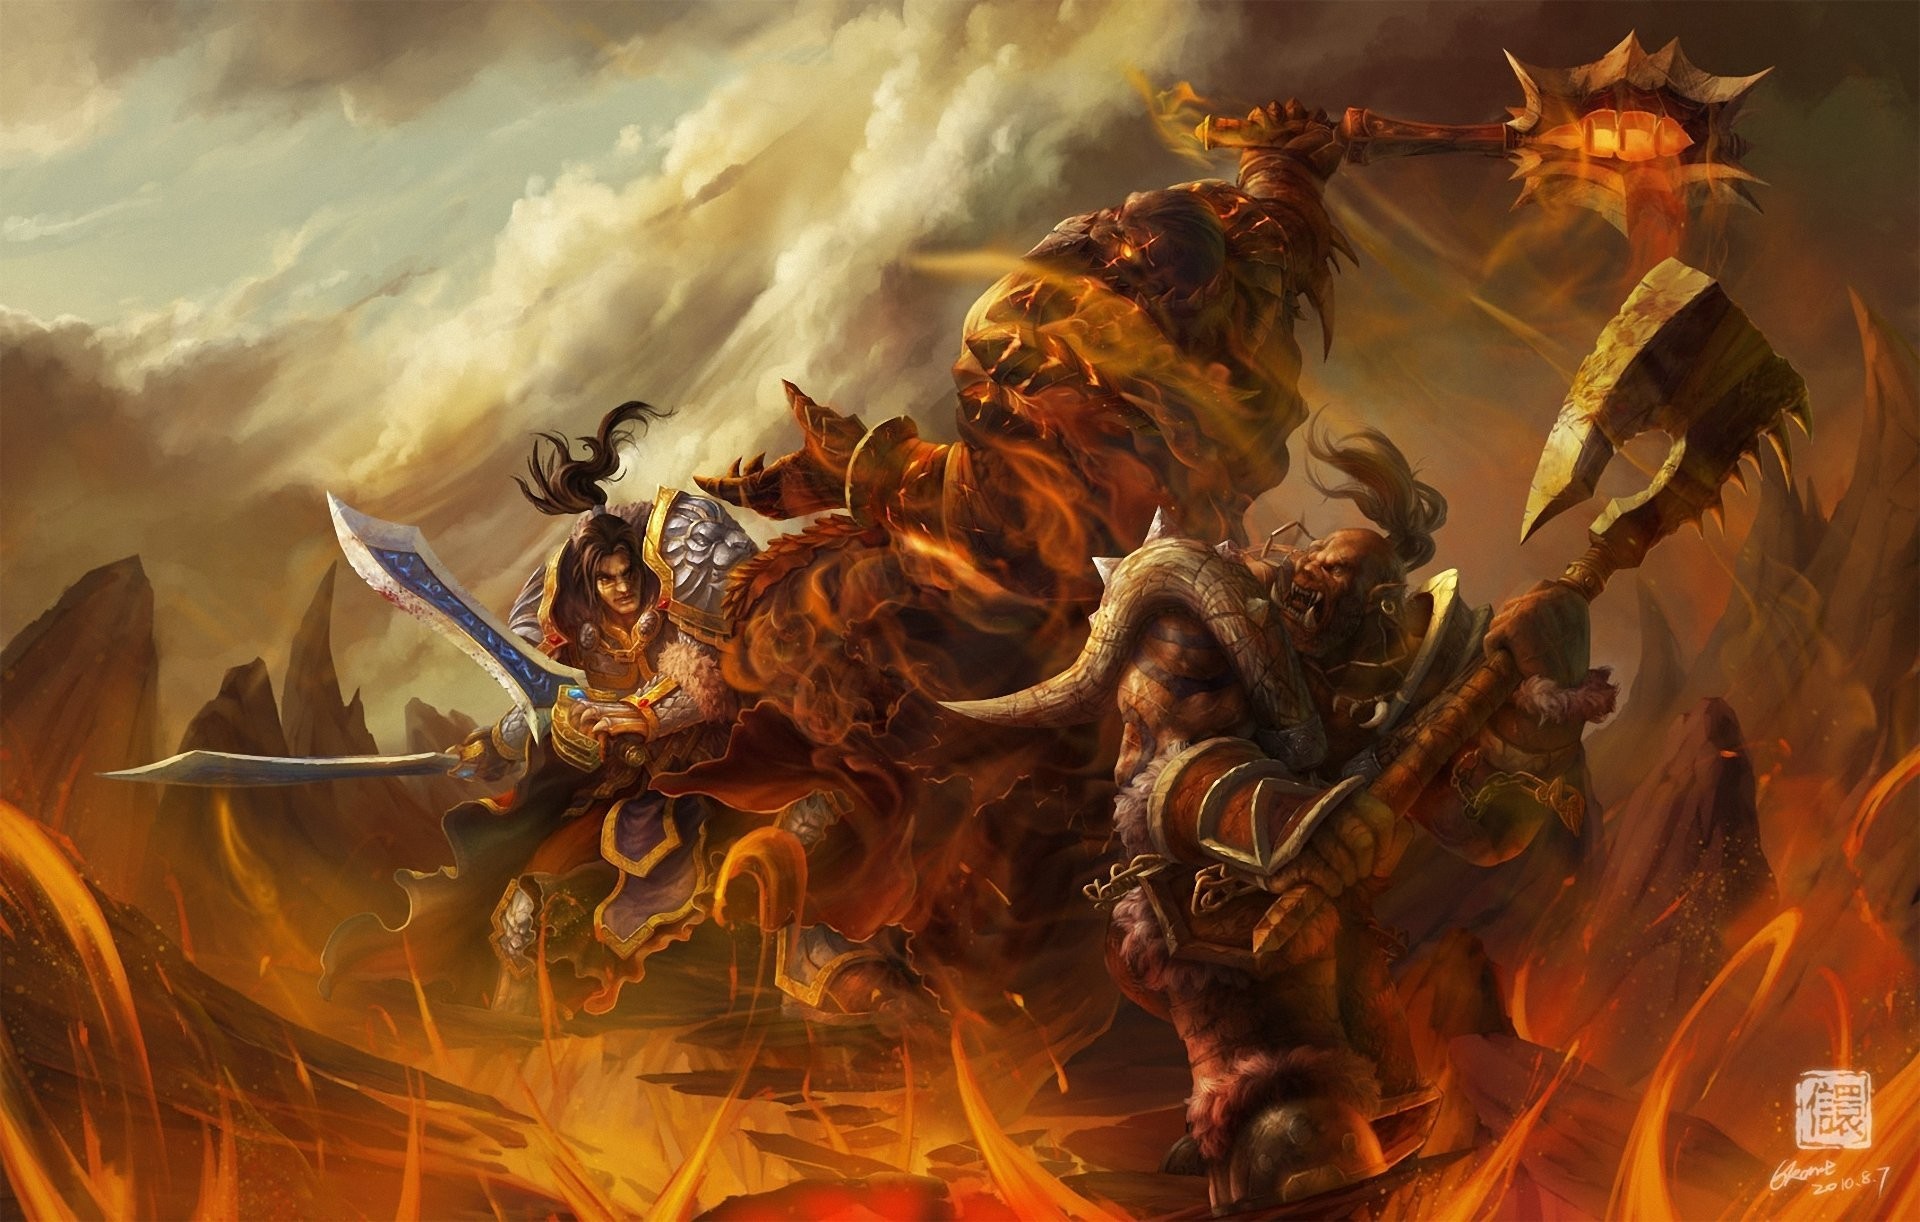 1920x1222 art wow world of warcraft battle ork warrior monster weapon fire lava rock